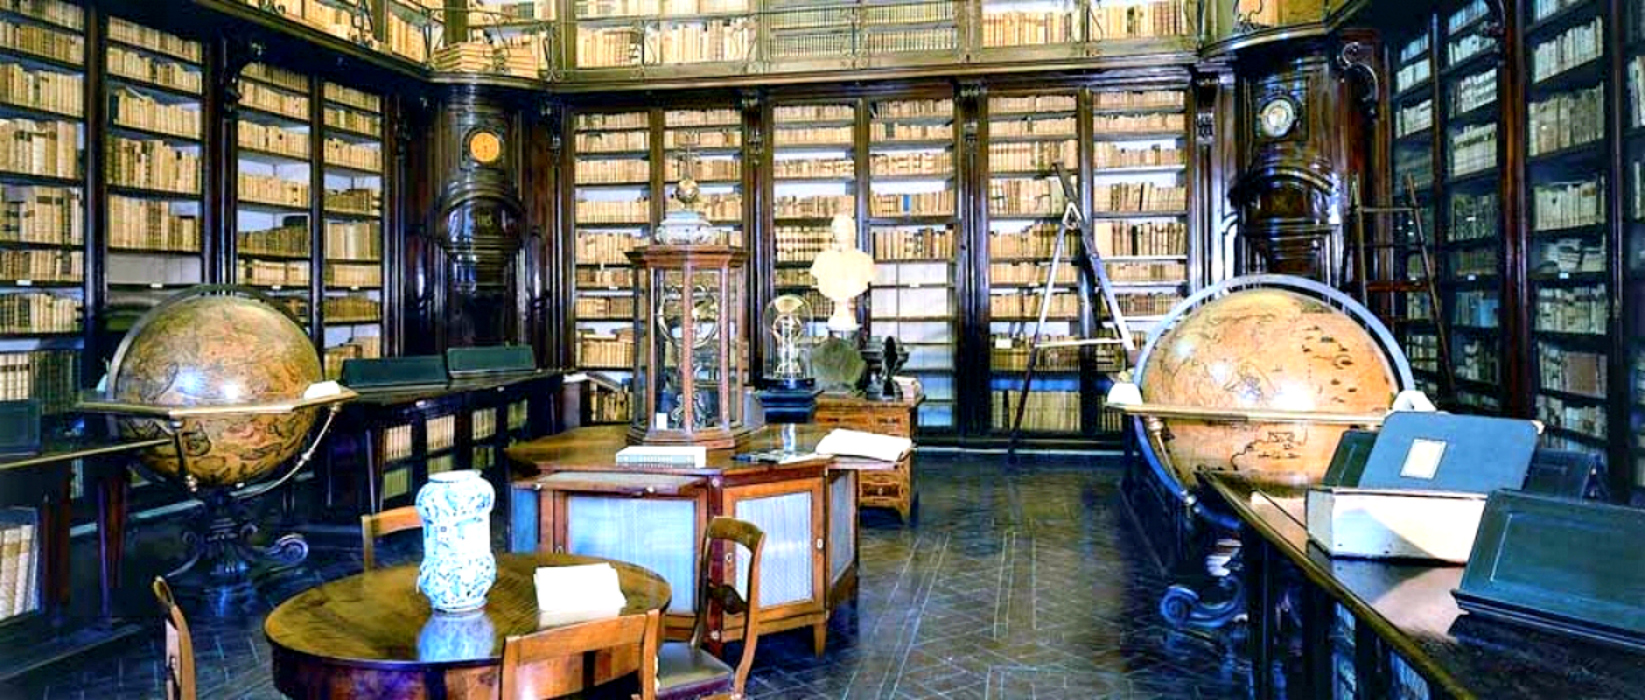 Biblioteche storiche di Roma: la Biblioteca Nazionale ...